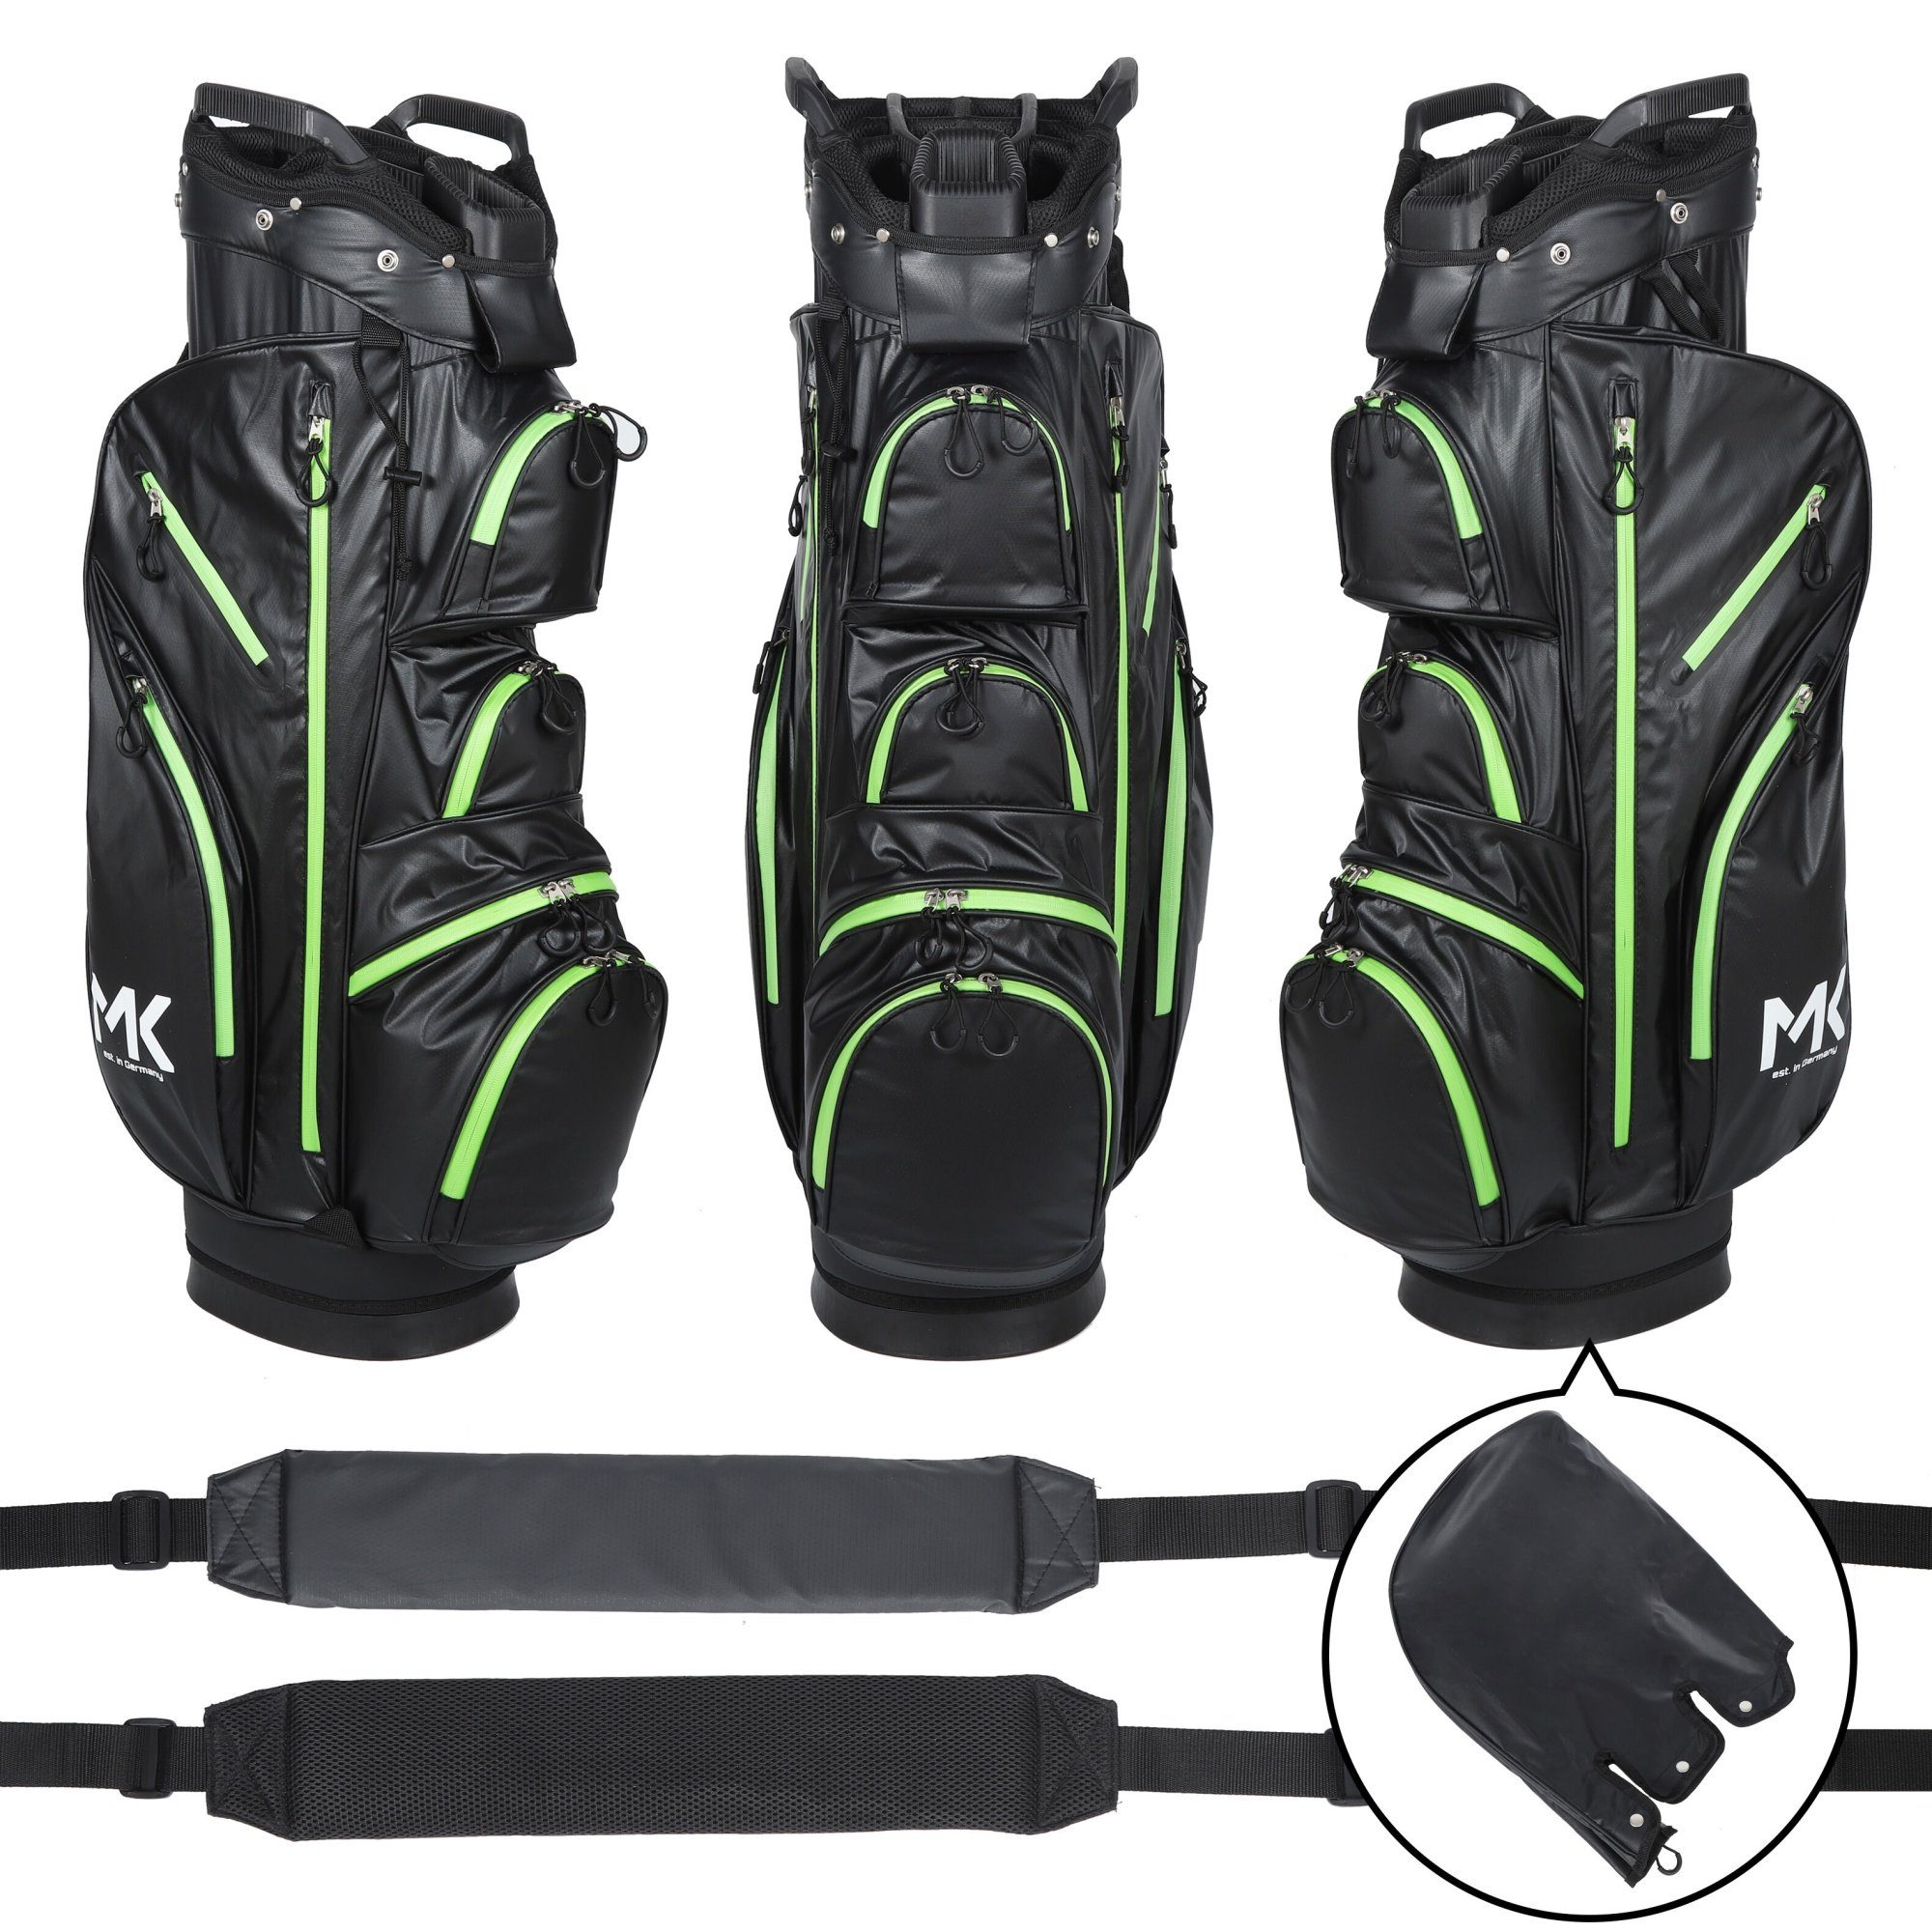 MK Golf Golftrolley Equipment - wasserdicht Trolleybag Golfbag Golftasche, Solid Tour + MK Grün Golf